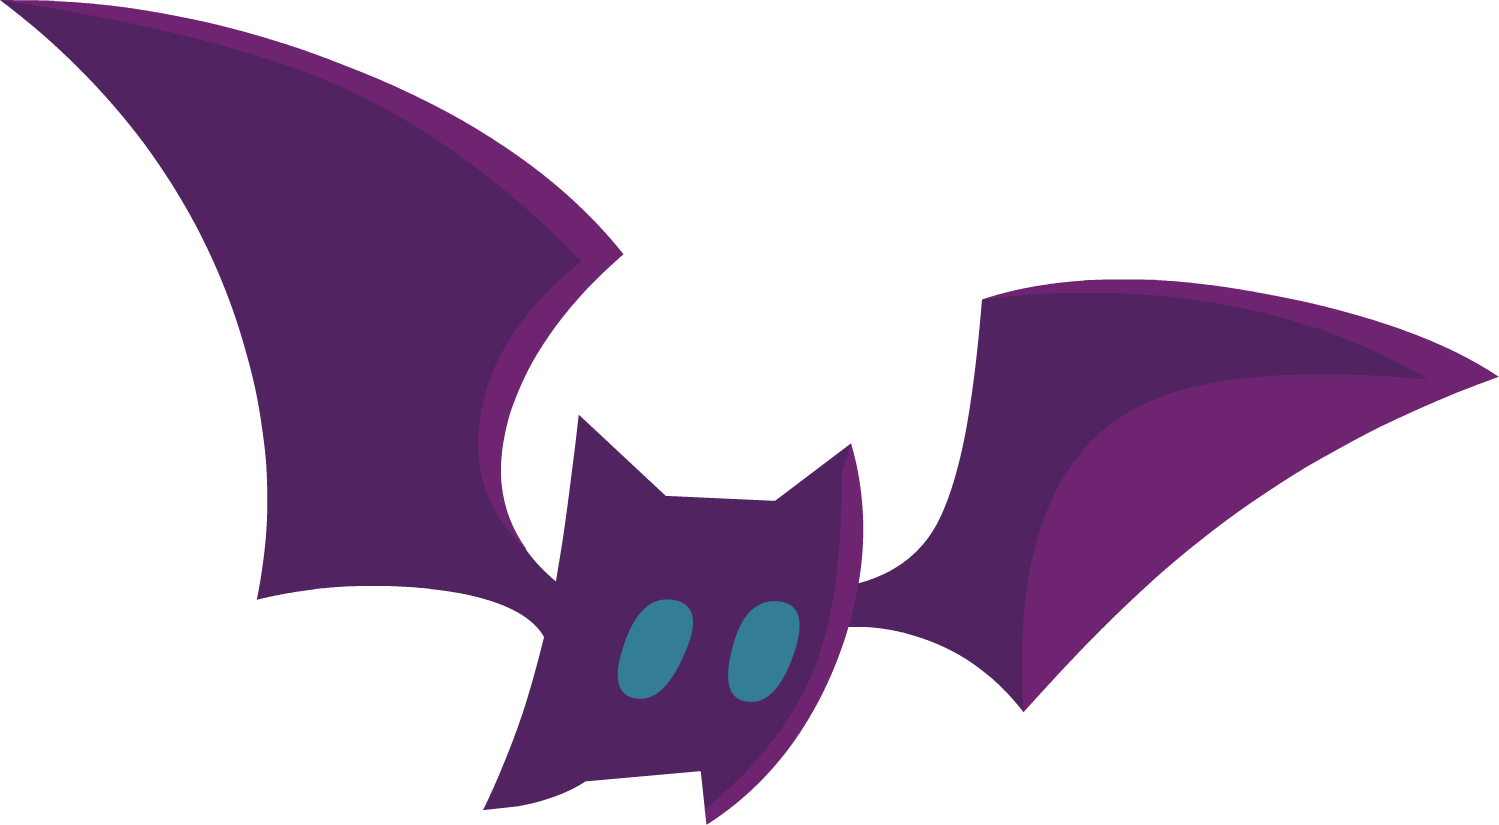 Pet Bat Purple - Purple Bat Transparent (1499x825), Png Download